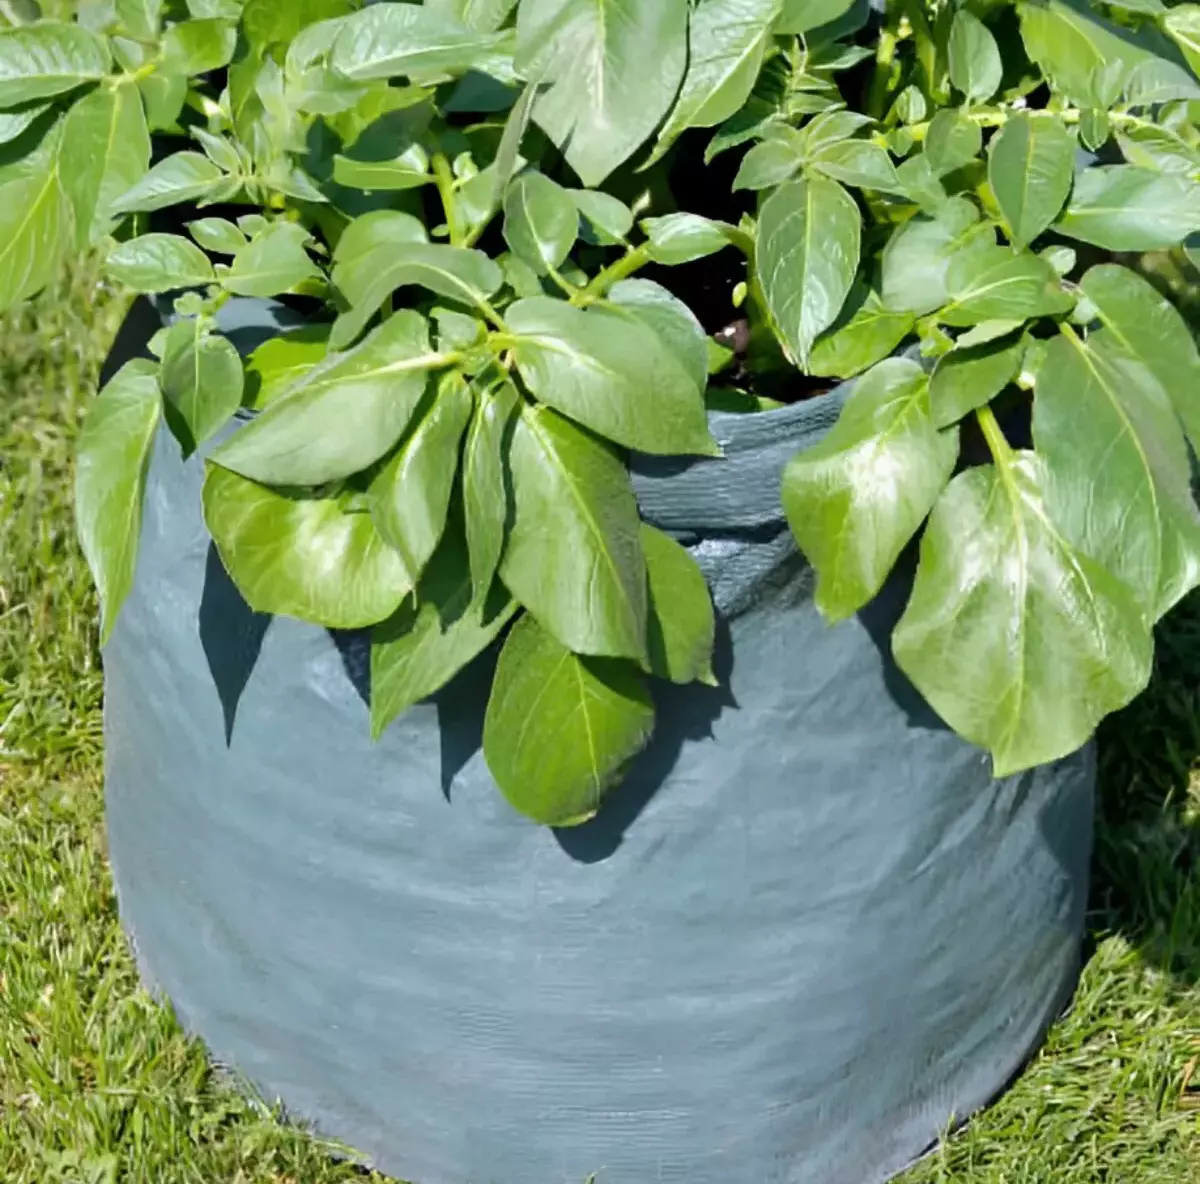 sac de plantation gris pose sur une pelouse verte avec une plante avec un feuillage vert abondant